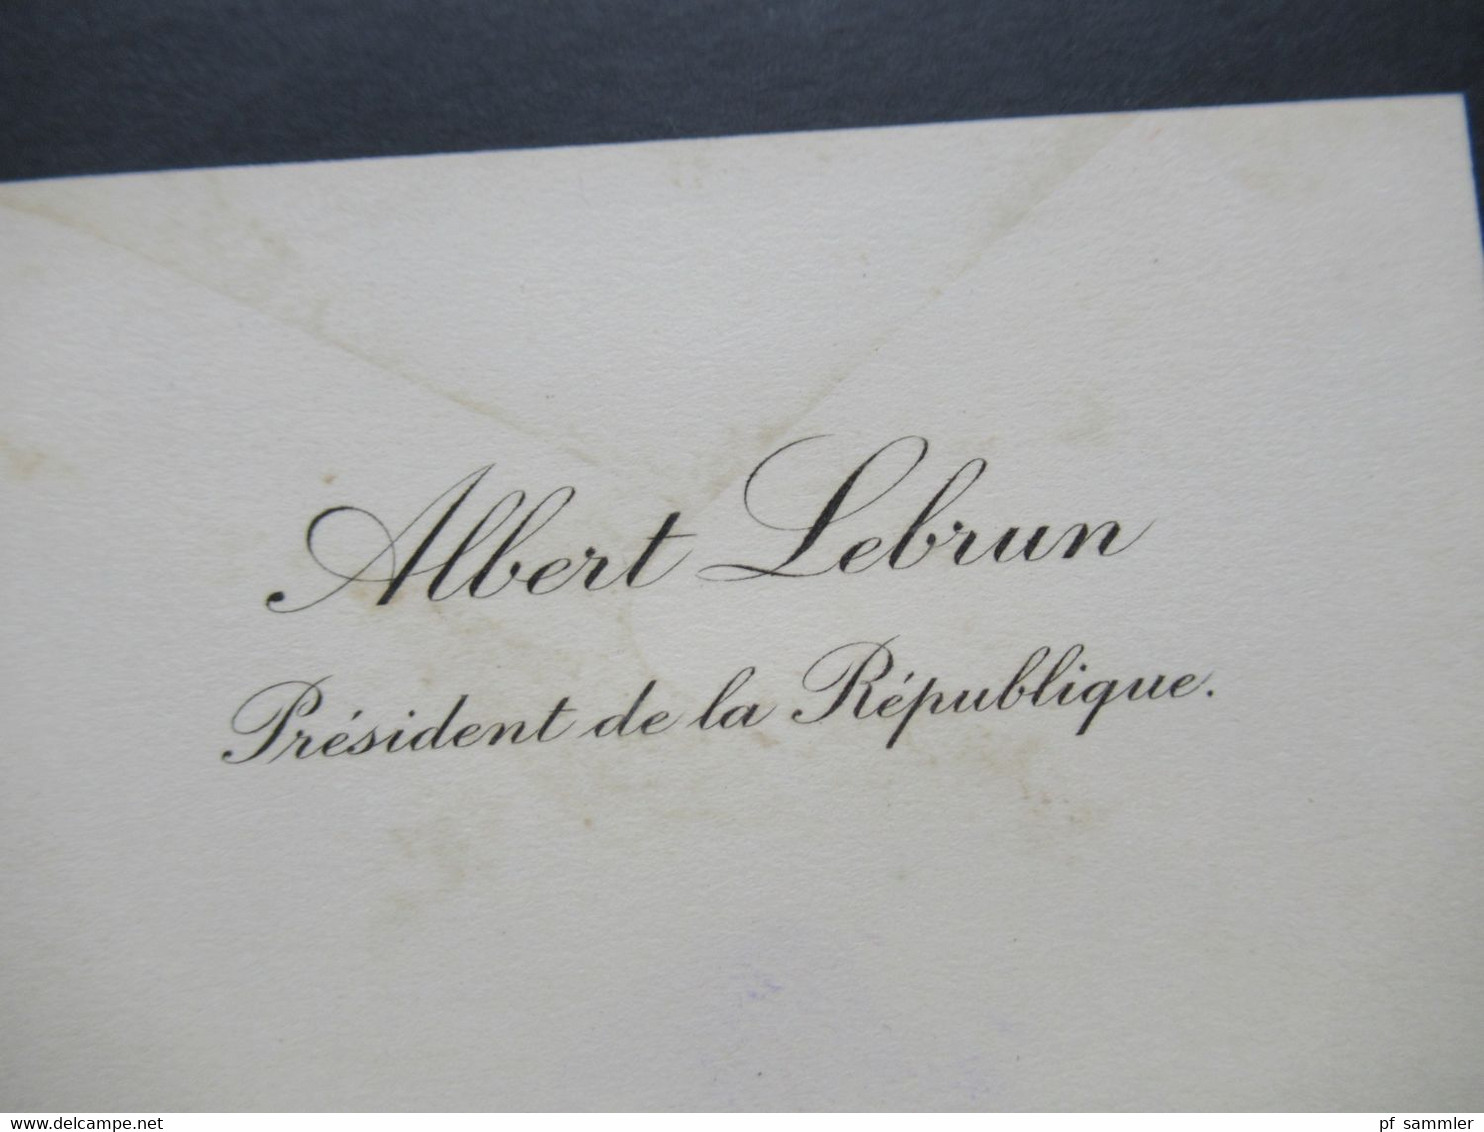 Frankreich 1934 Alte Originale Visitenkarte Albert Lebrun Präsident De La Republique Umschlag Roter Stempel President - Cartes De Visite